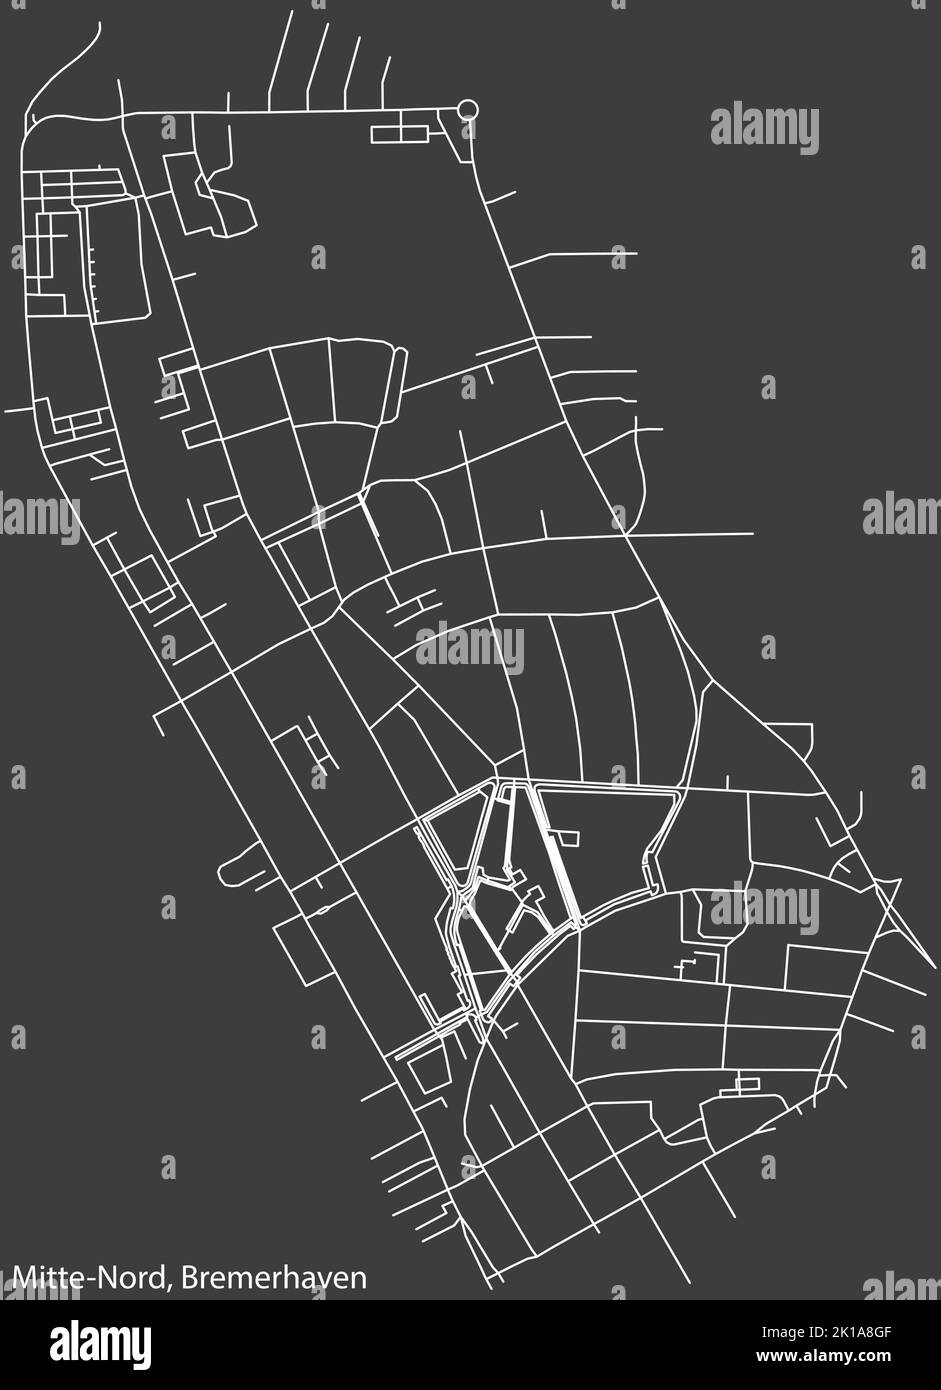 Mappa stradale del QUARTIERE MITTE-NORD, BREMERHAVEN Illustrazione Vettoriale